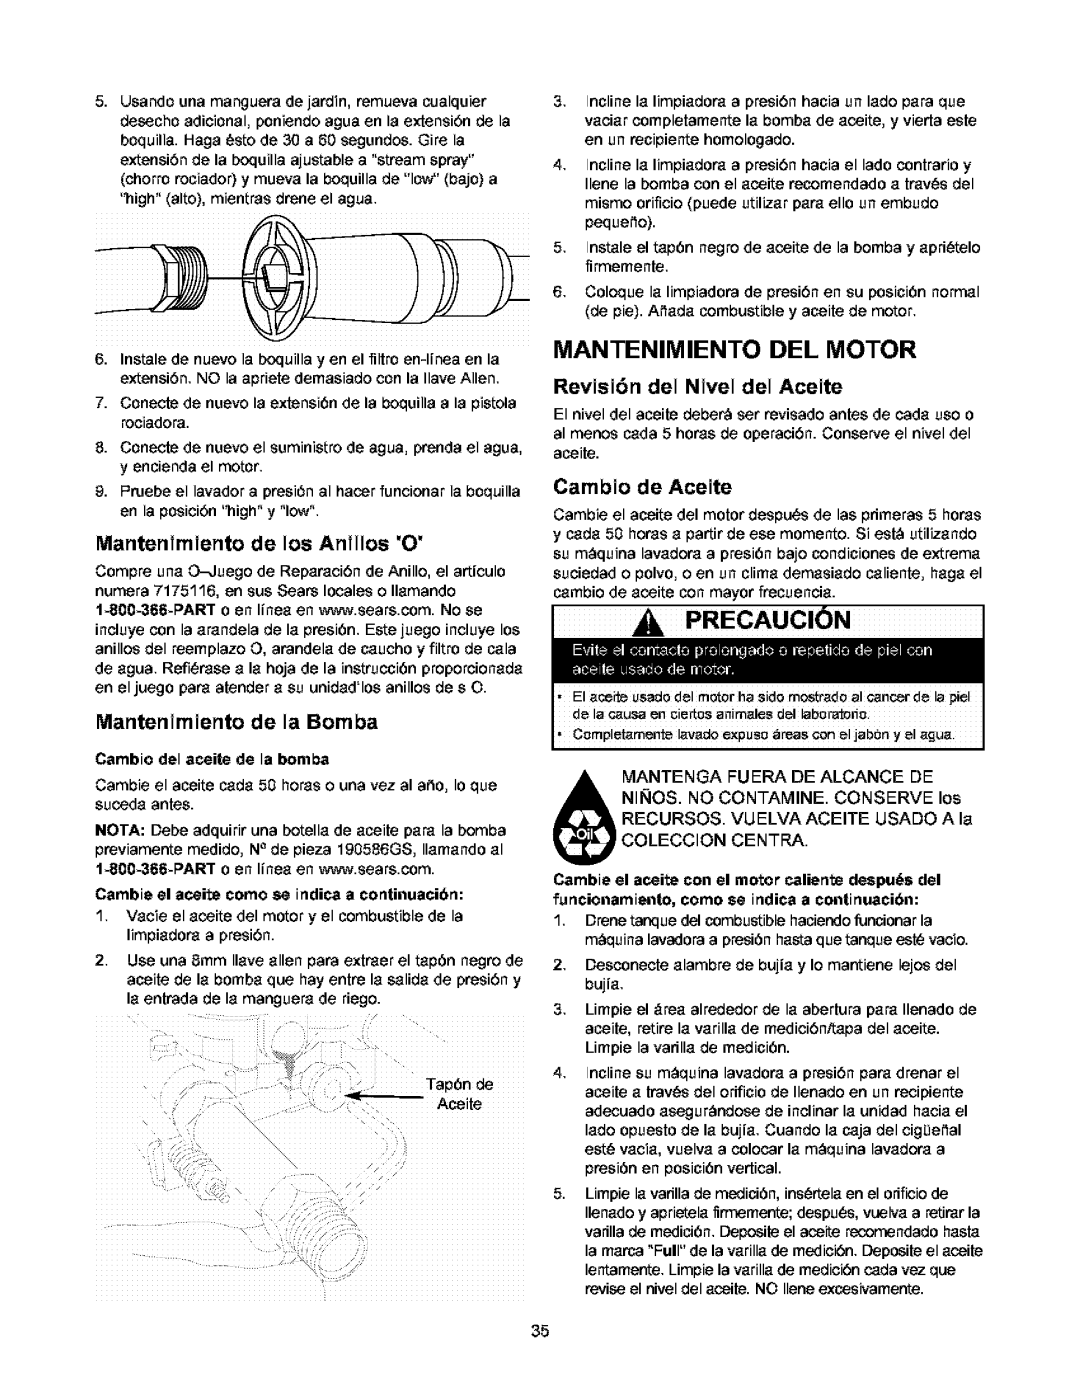 Craftsman 580.752 owner manual Precaucion, Revisi6n del Nivel del Aceite, Mantenimiento de los Anillos O, Cambio de Aceite 